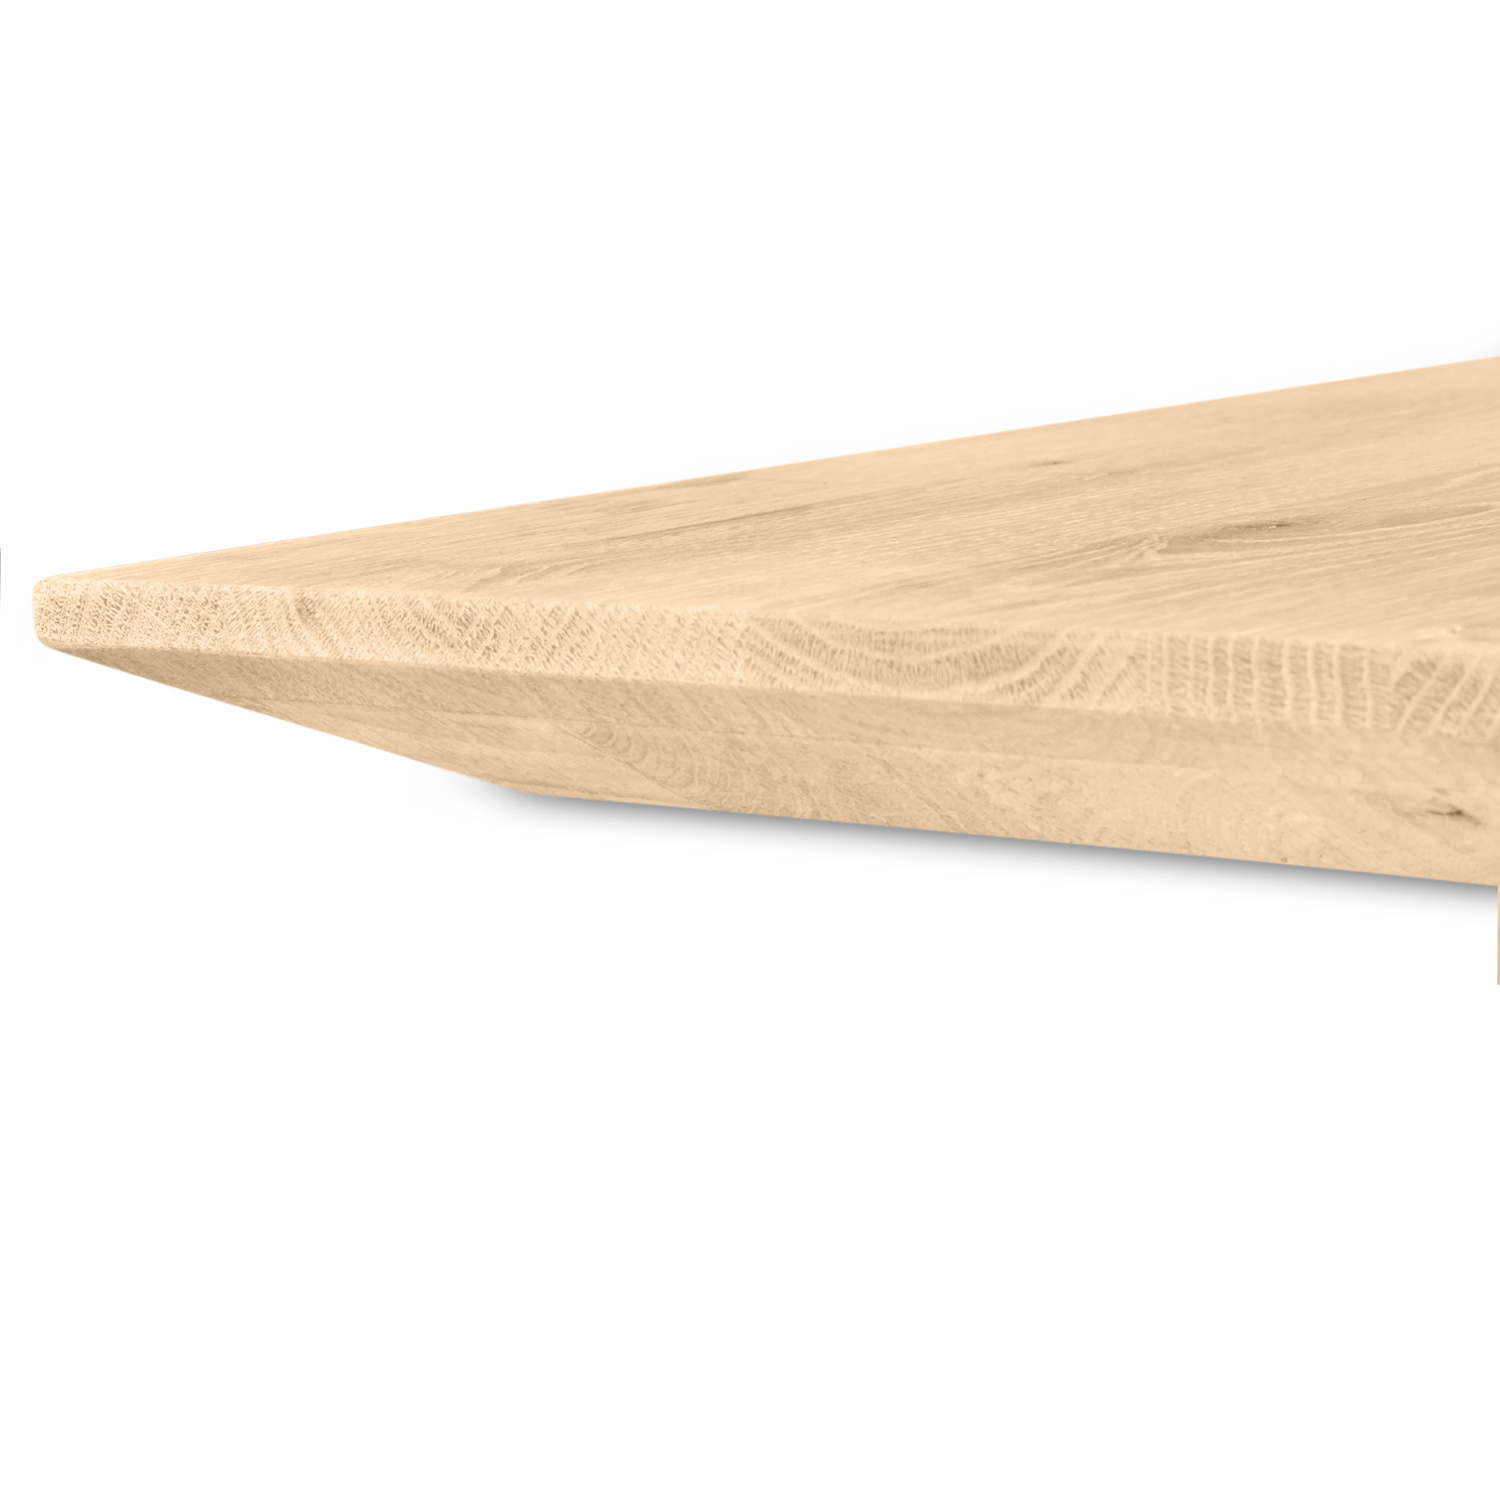  Tischplatte Eiche - Schweizer Kante - nach Maß - 4 cm dick (2-lagig) - Eichenholz rustikal - Eiche Tischplatte massiv - verleimt & künstlich getrocknet (HF 8-12%) - 50-120x50-350 cm